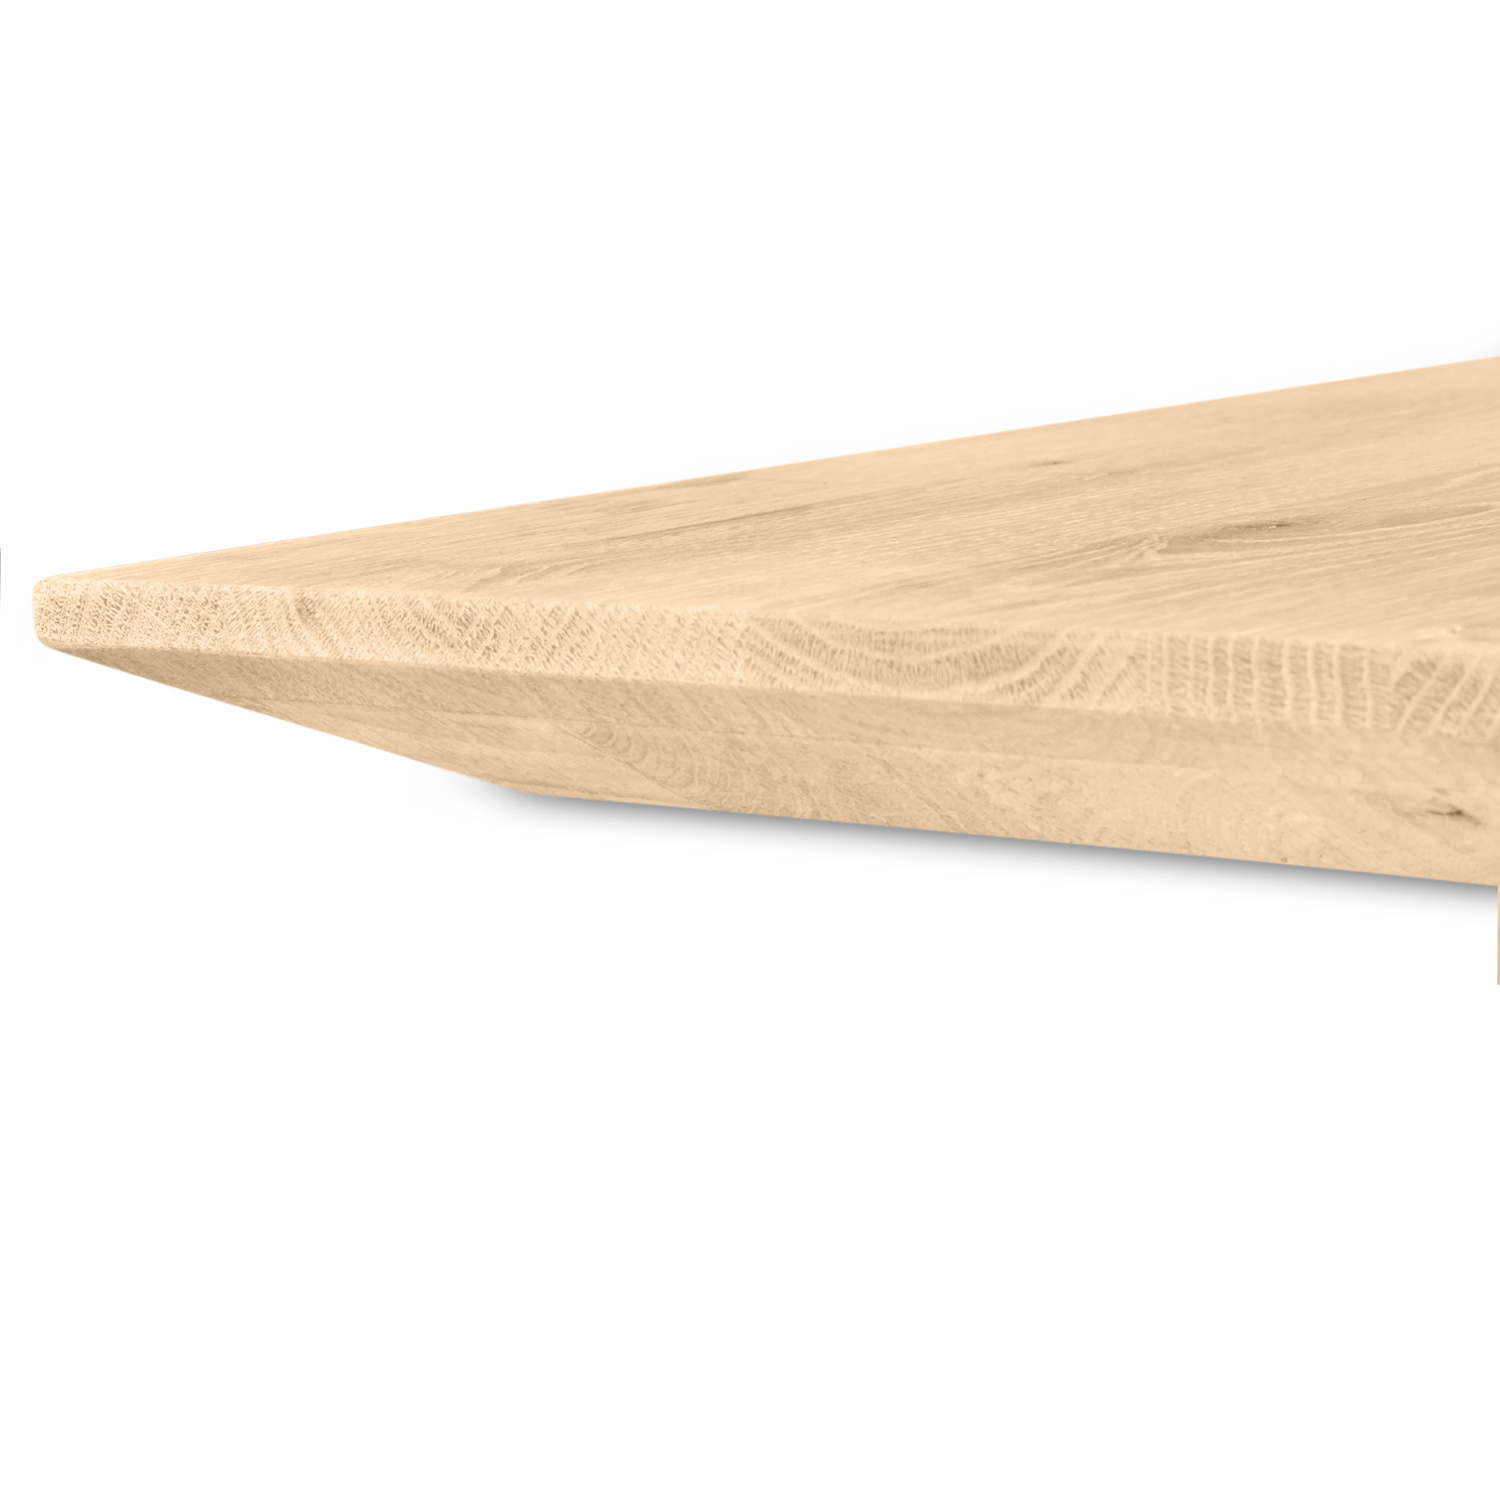  Tischplatte Eiche - Schweizer Kante - nach Maß - 4 cm dick (2-lagig) - Eichenholz rustikal - Eiche Tischplatte massiv - verleimt & künstlich getrocknet (HF 8-12%) - 50-120x50-350 cm